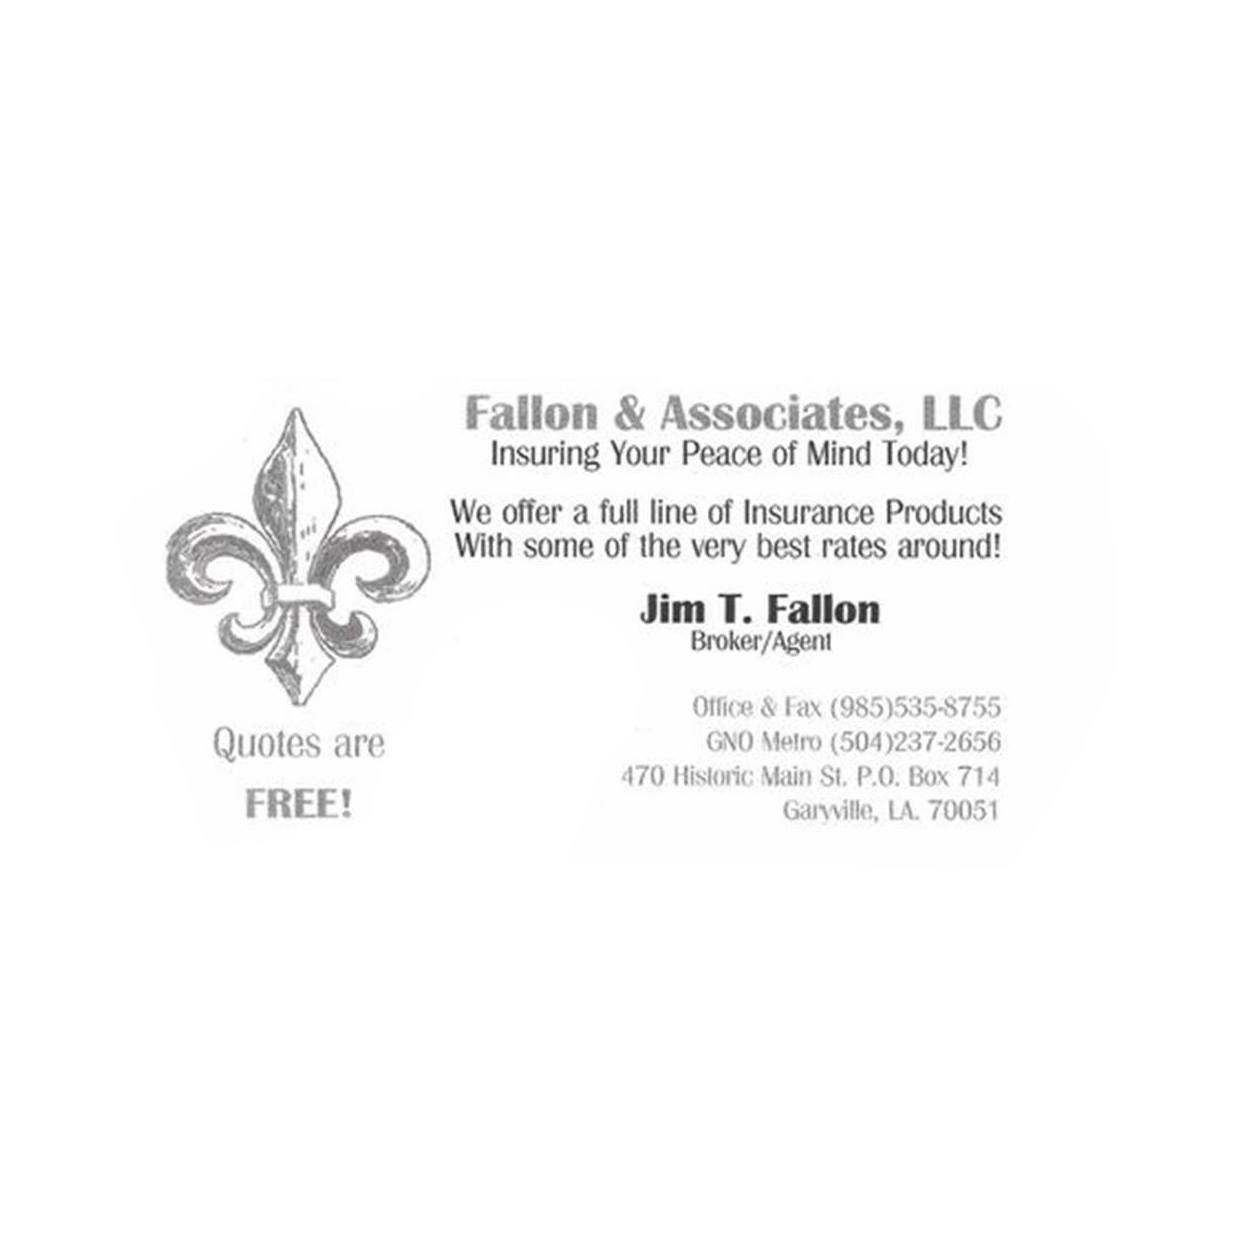 Fallon & Associates